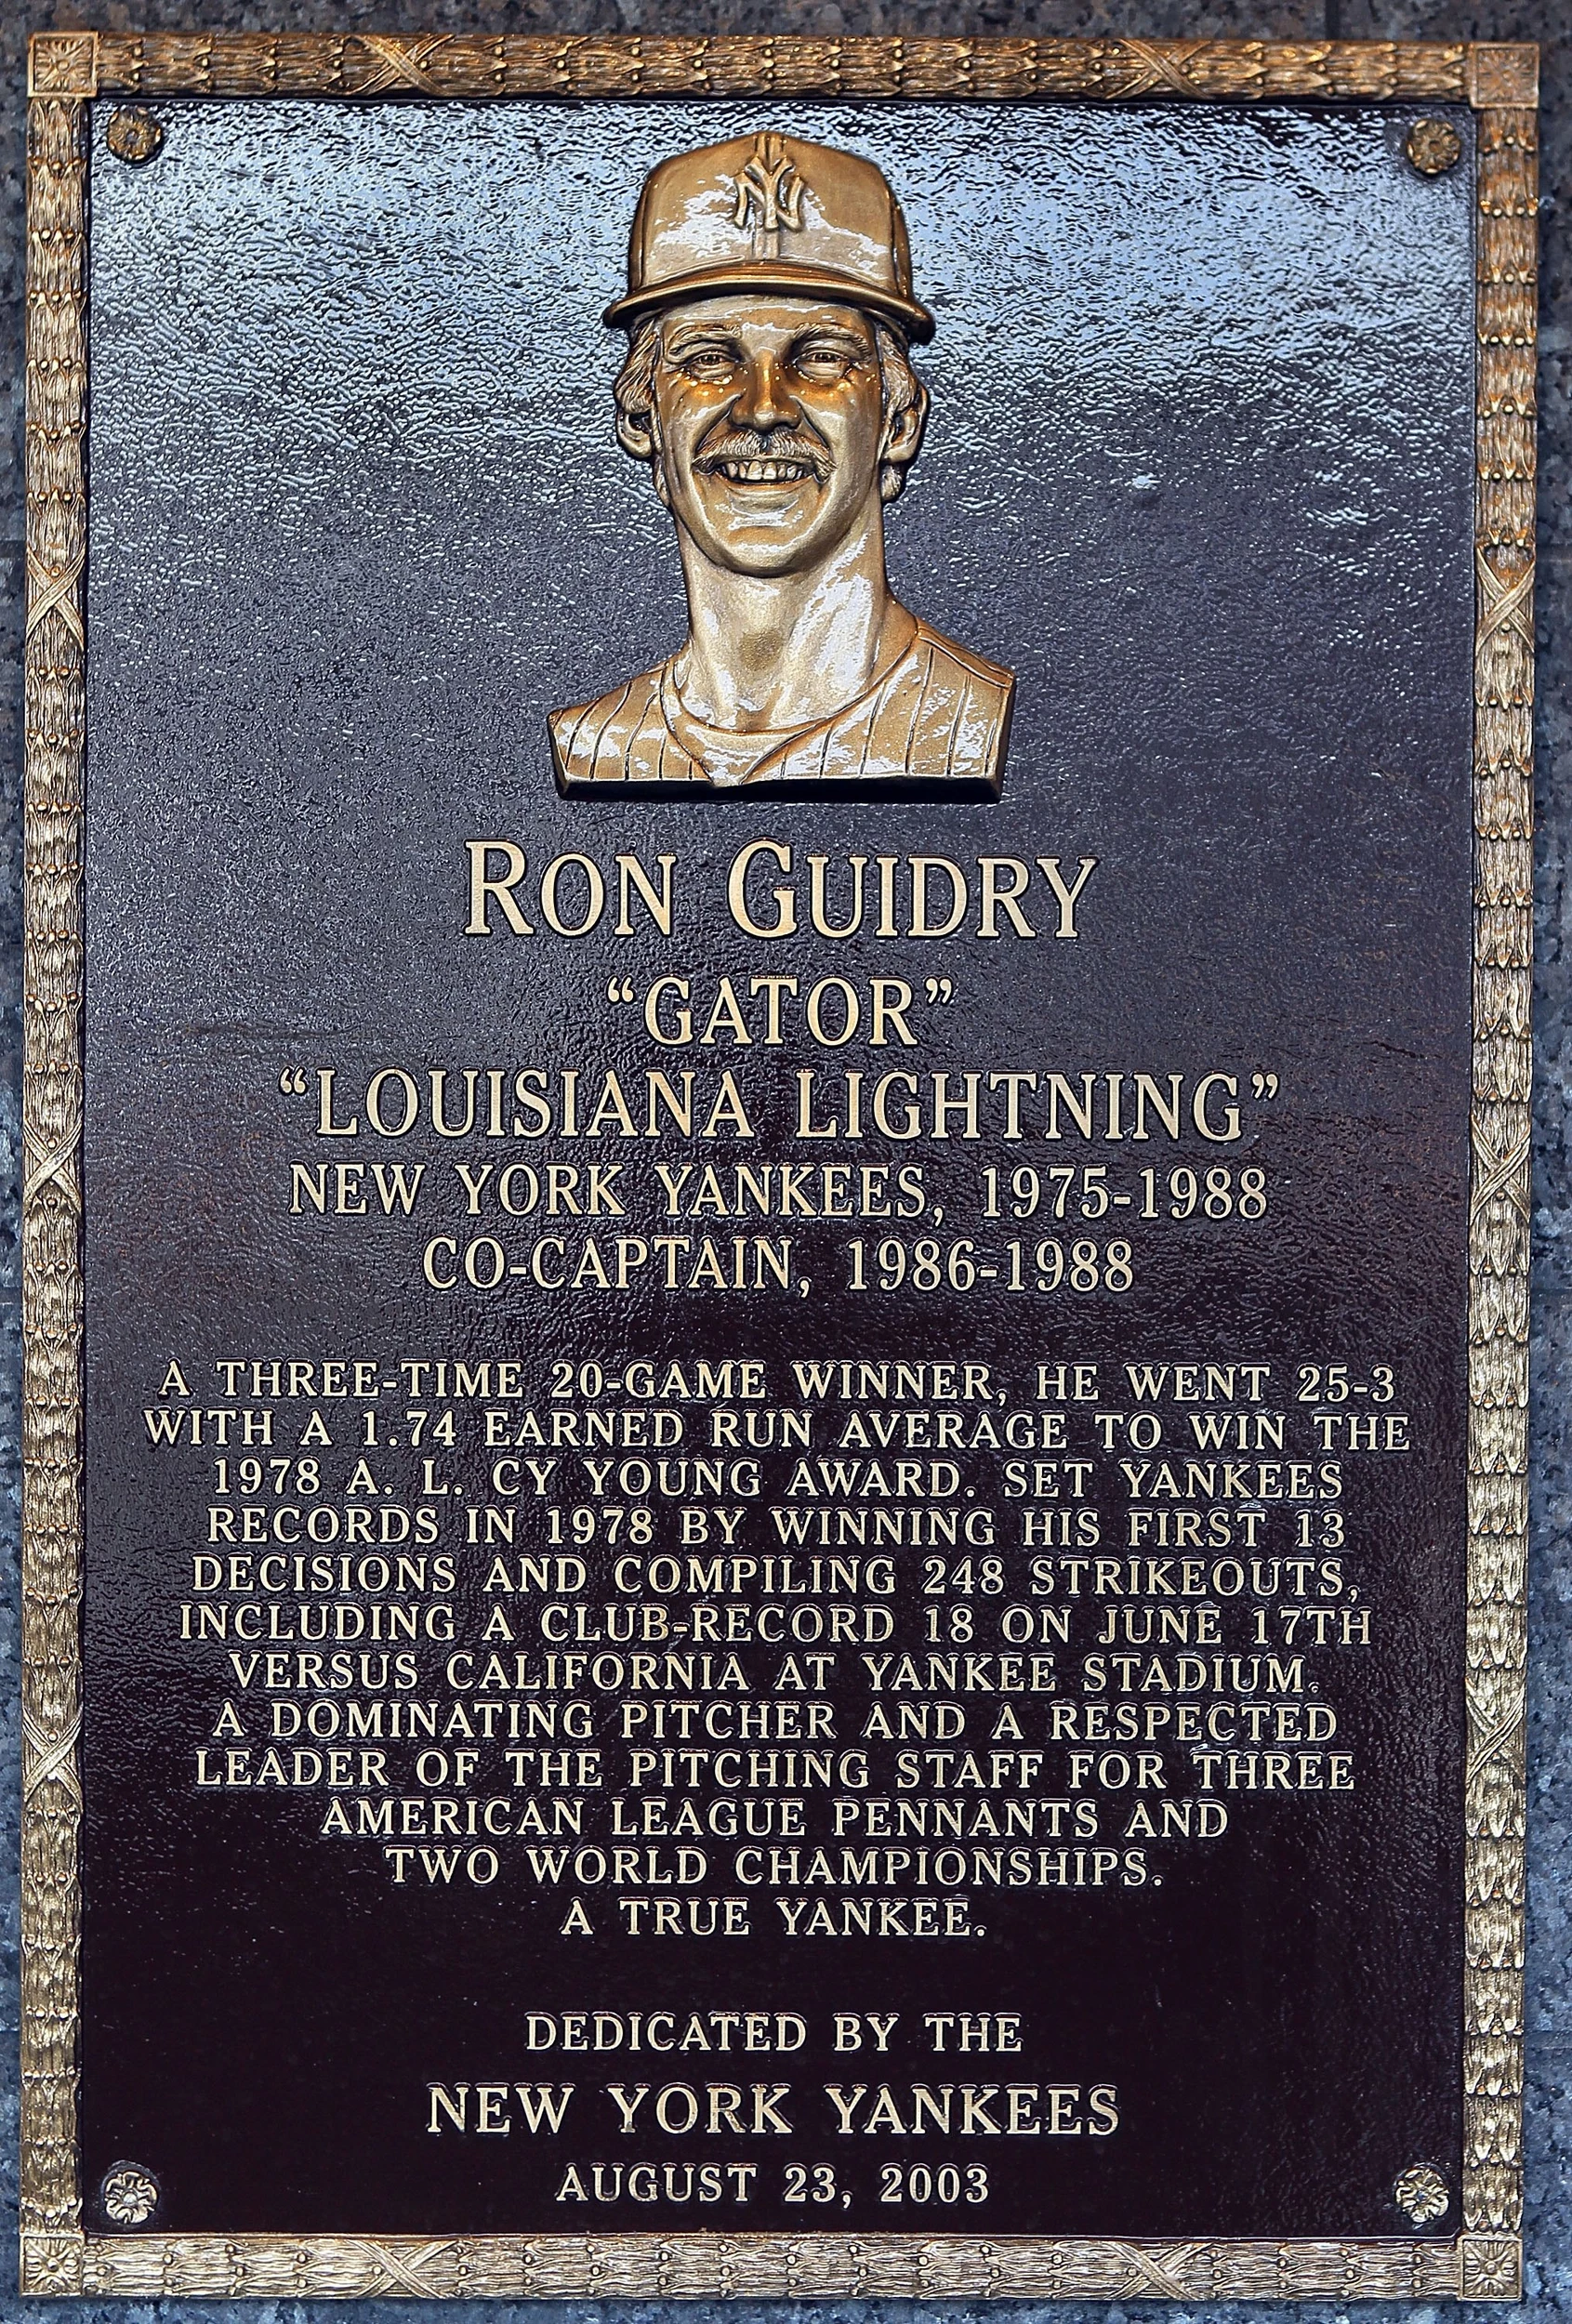 Ron Louisiana Lightning Guidry